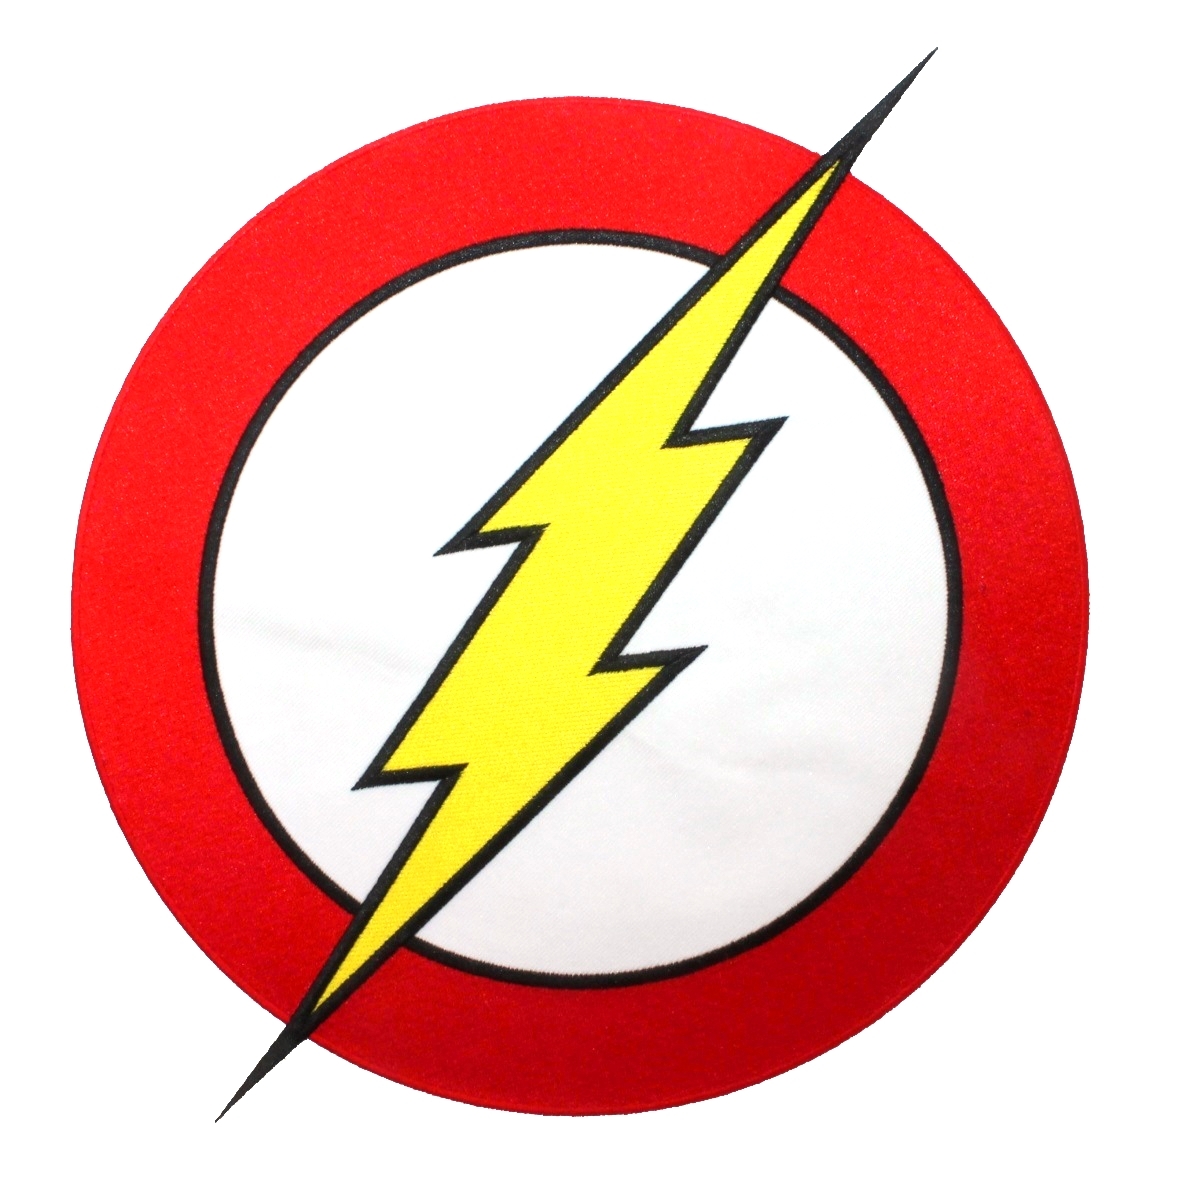 Superhero Logos Clipart